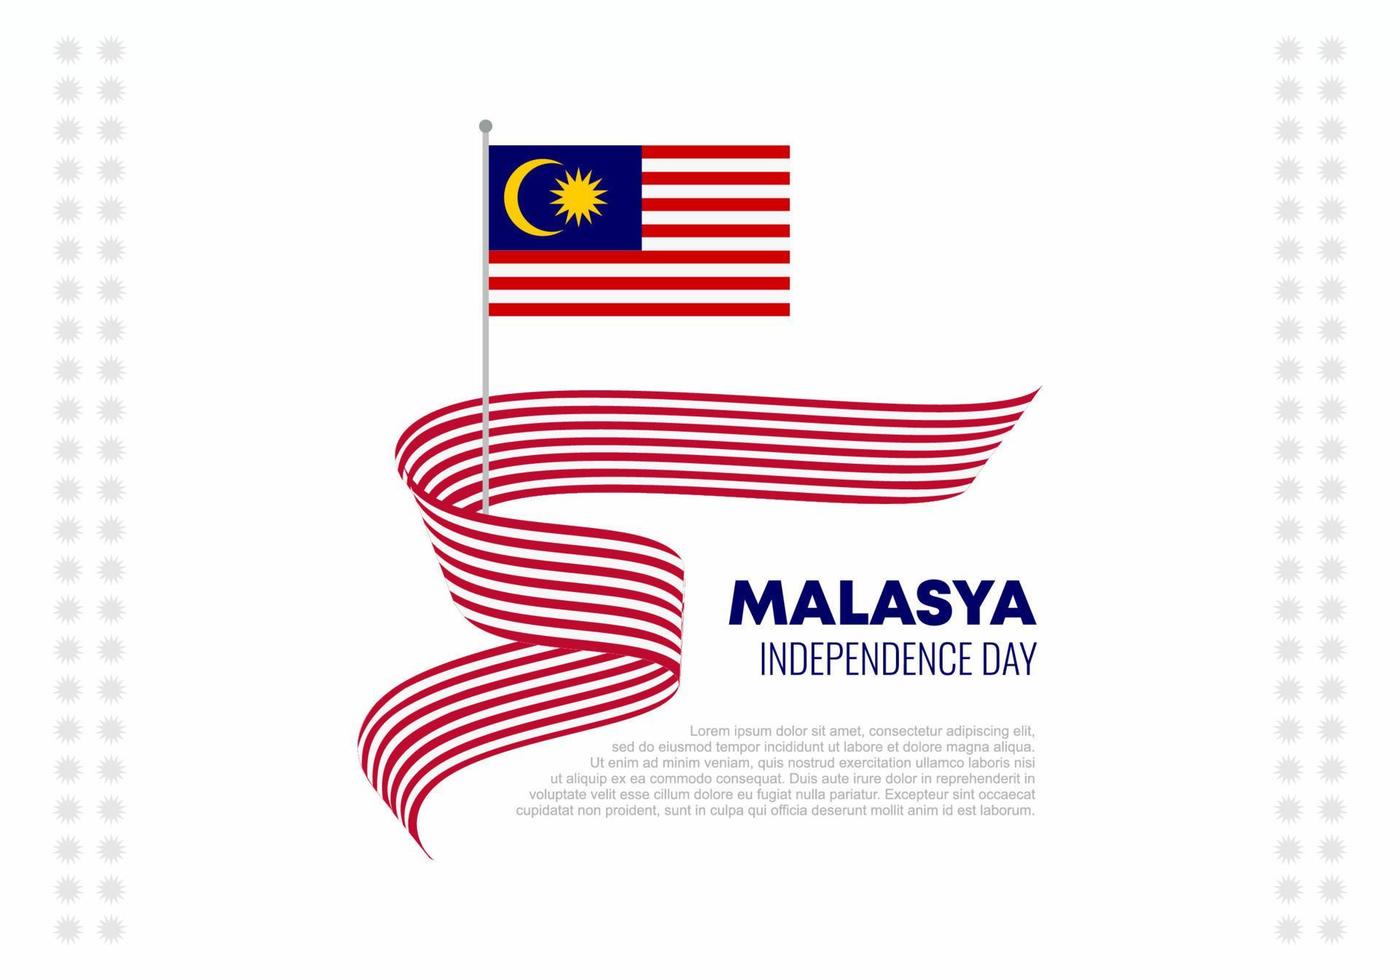 célébration nationale de la fête de l'indépendance de la malaisie le 31 août. vecteur